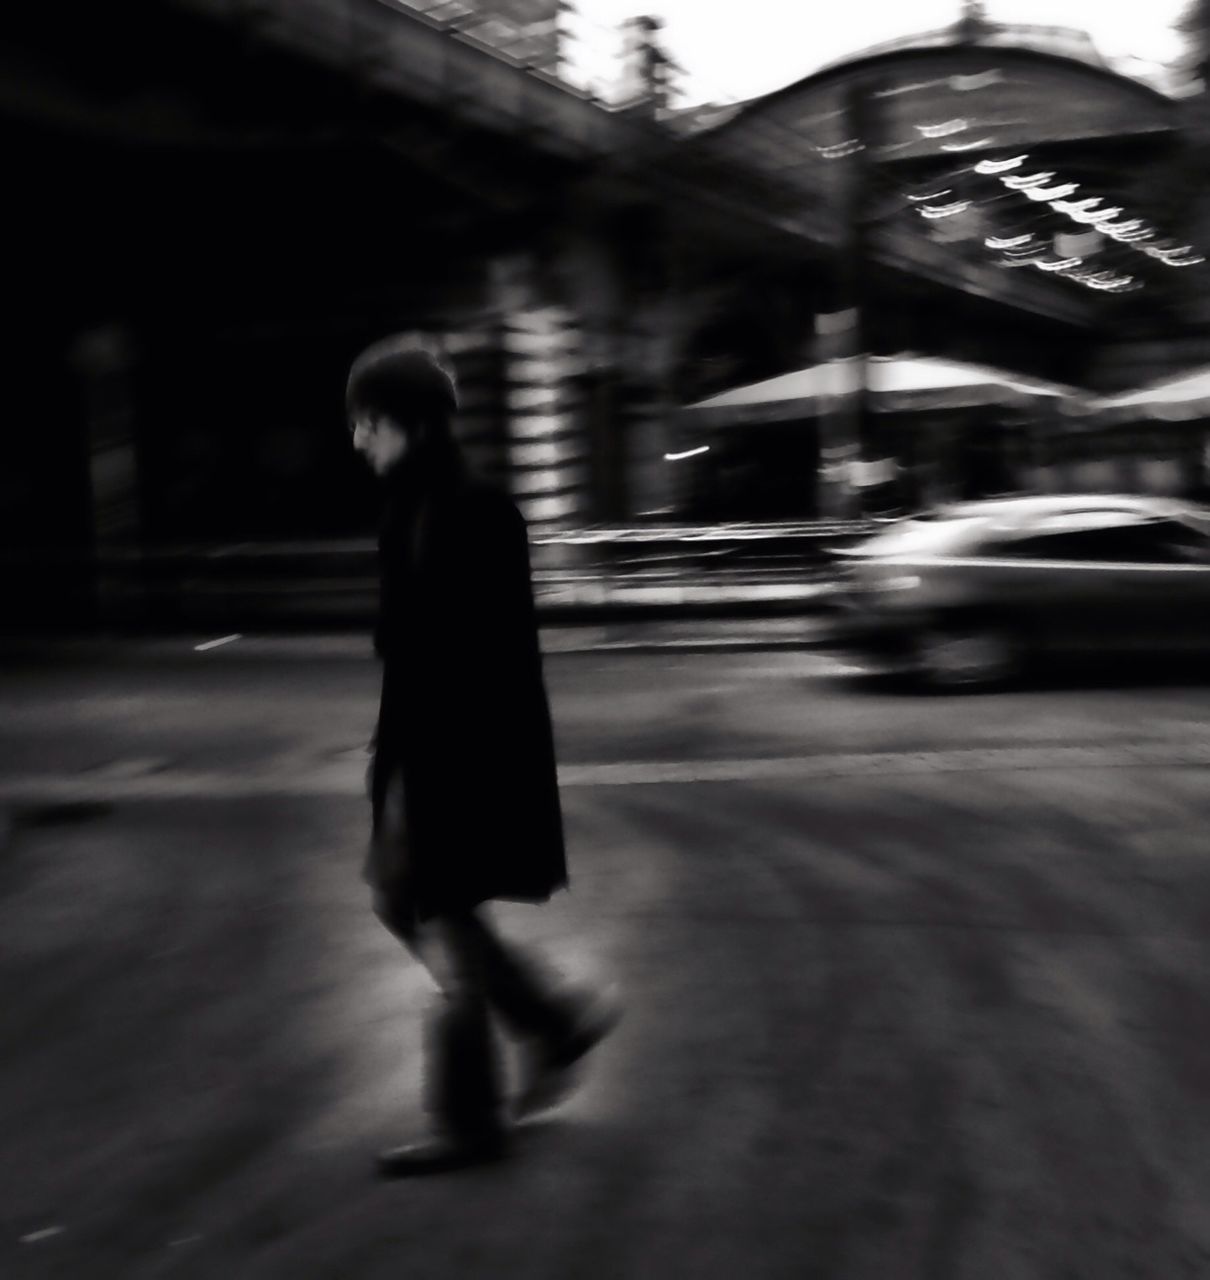 WOMAN WALKING ON ROAD IN CITY